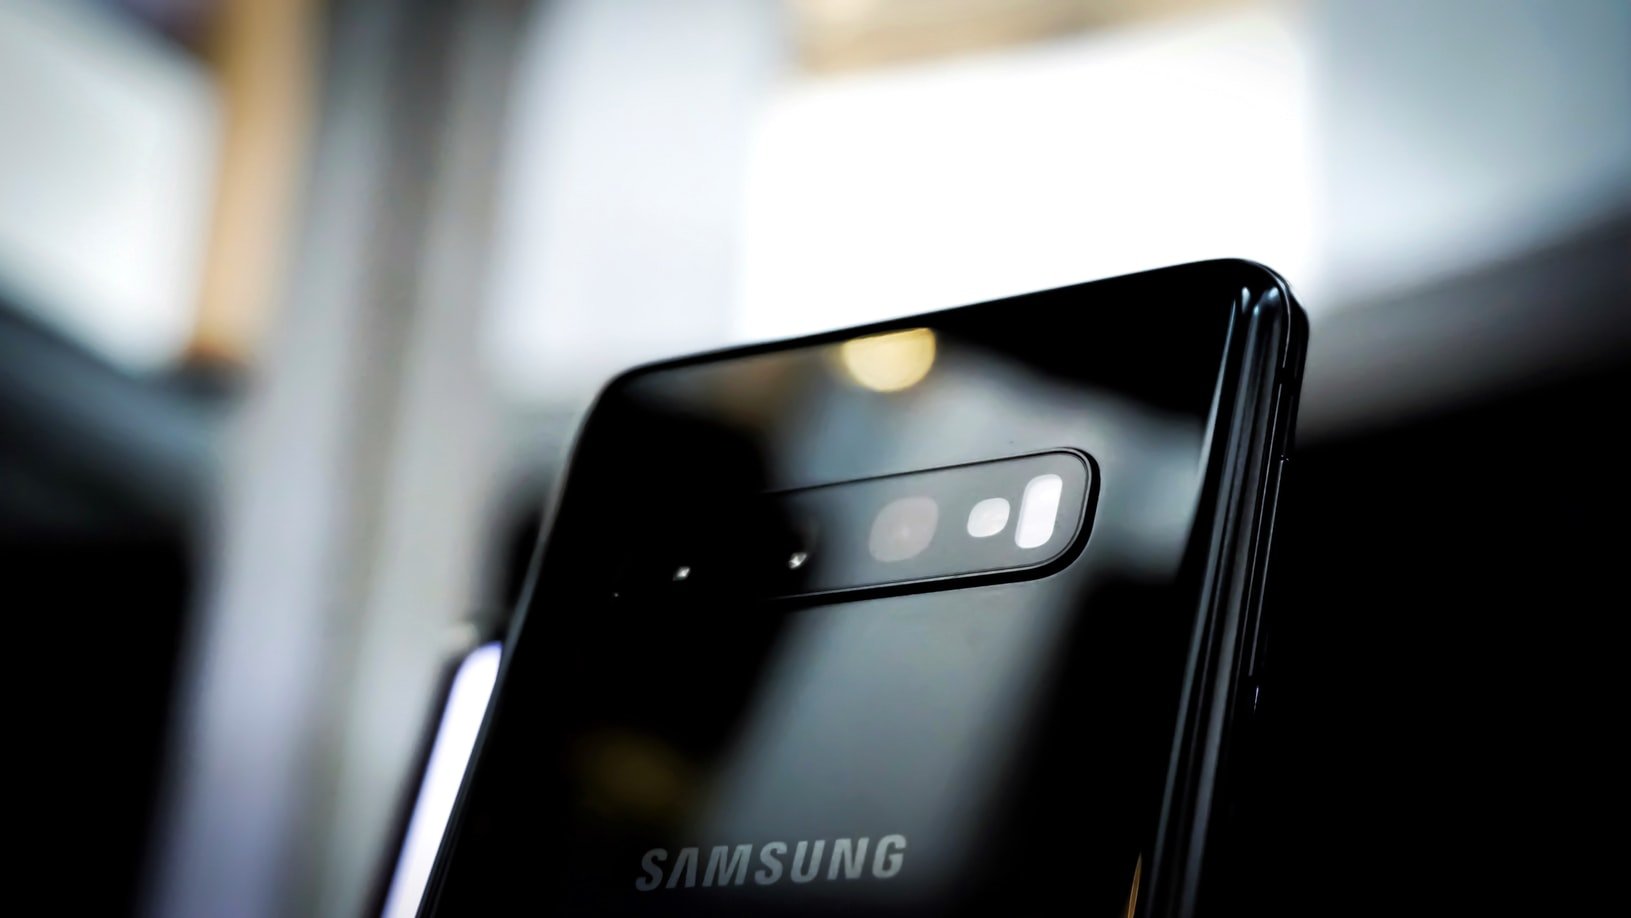 Lohnt sich der Kauf des Samsung Galaxy S10 heute noch?